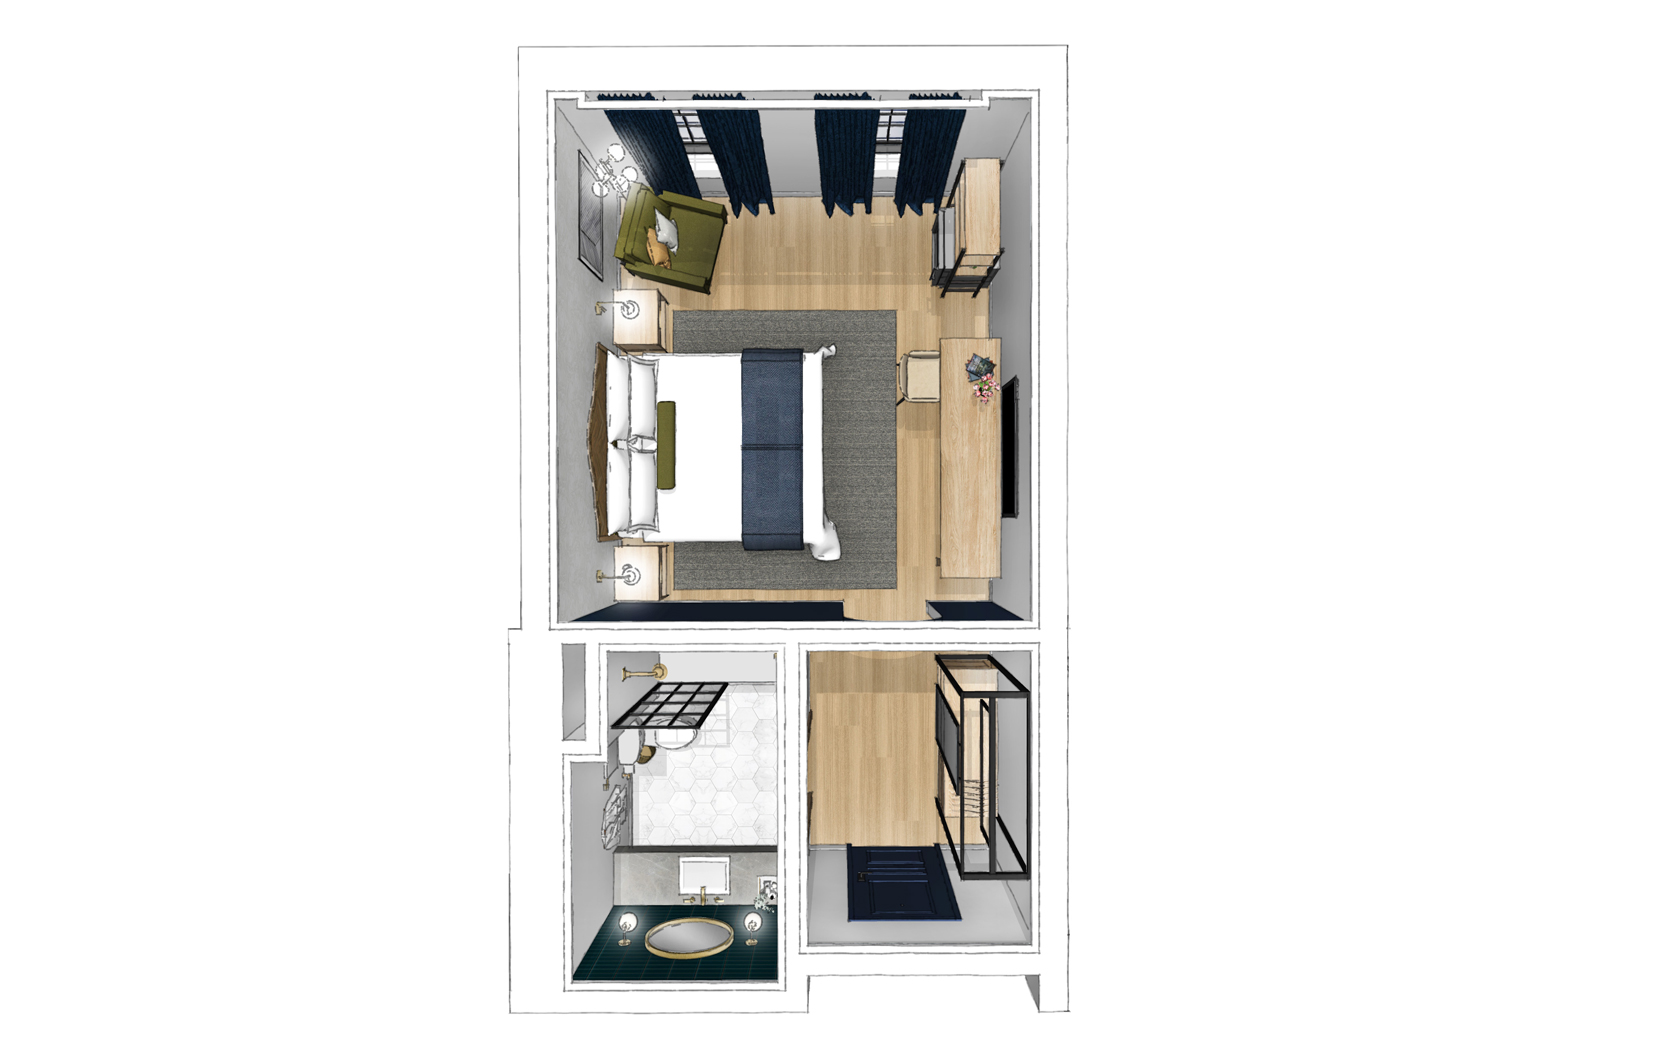 Floorplan for Deluxe King Guestroom